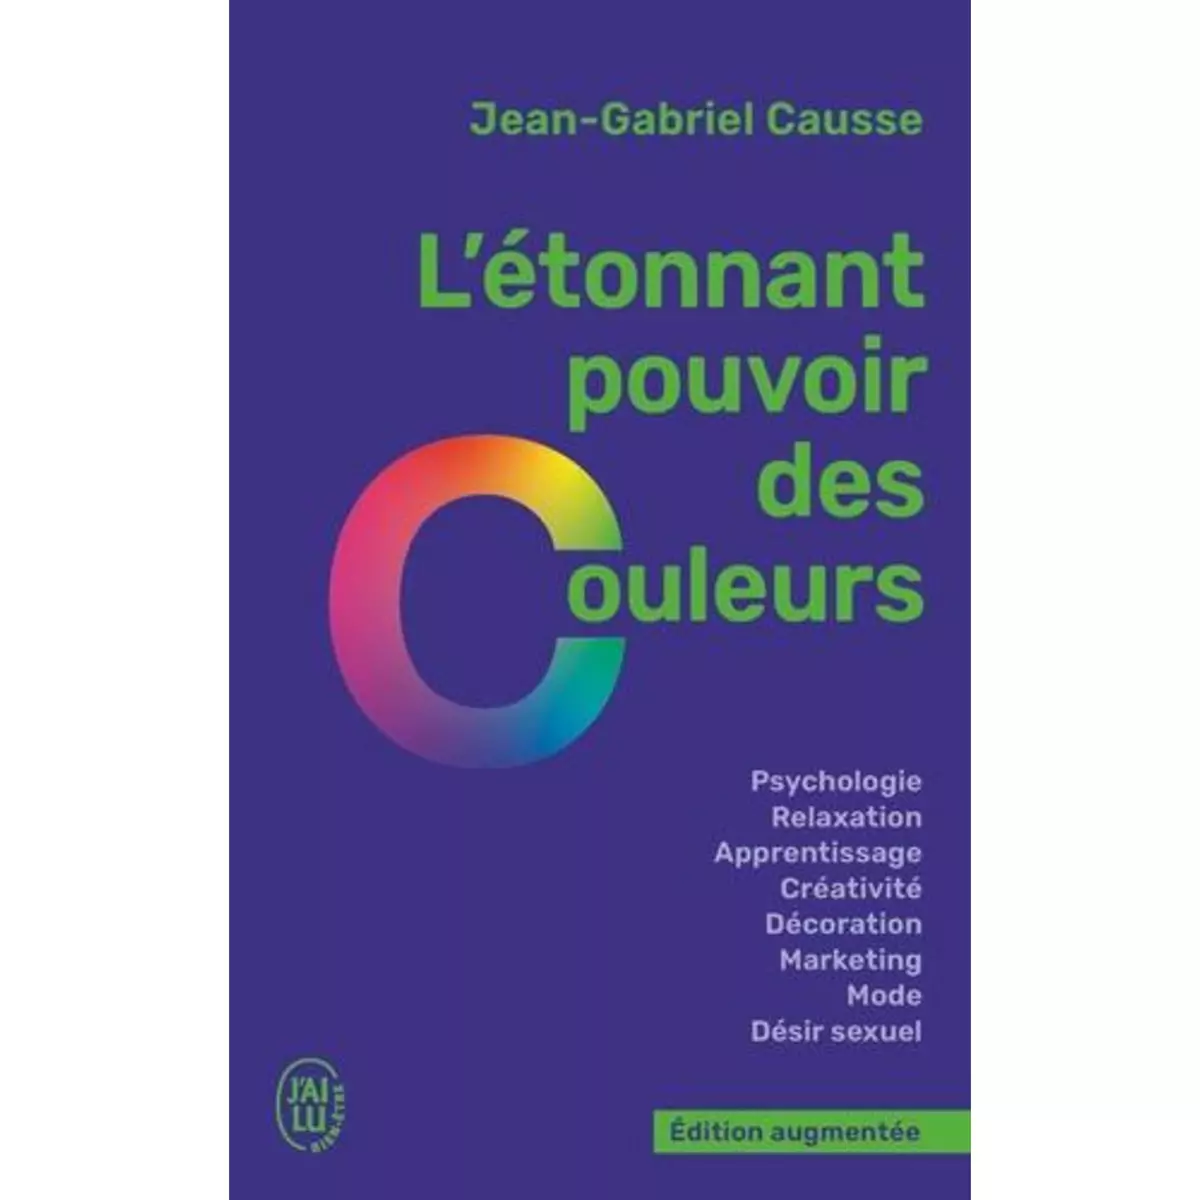  L'ETONNANT POUVOIR DES COULEURS. EDITION REVUE ET AUGMENTEE, Causse Jean-Gabriel